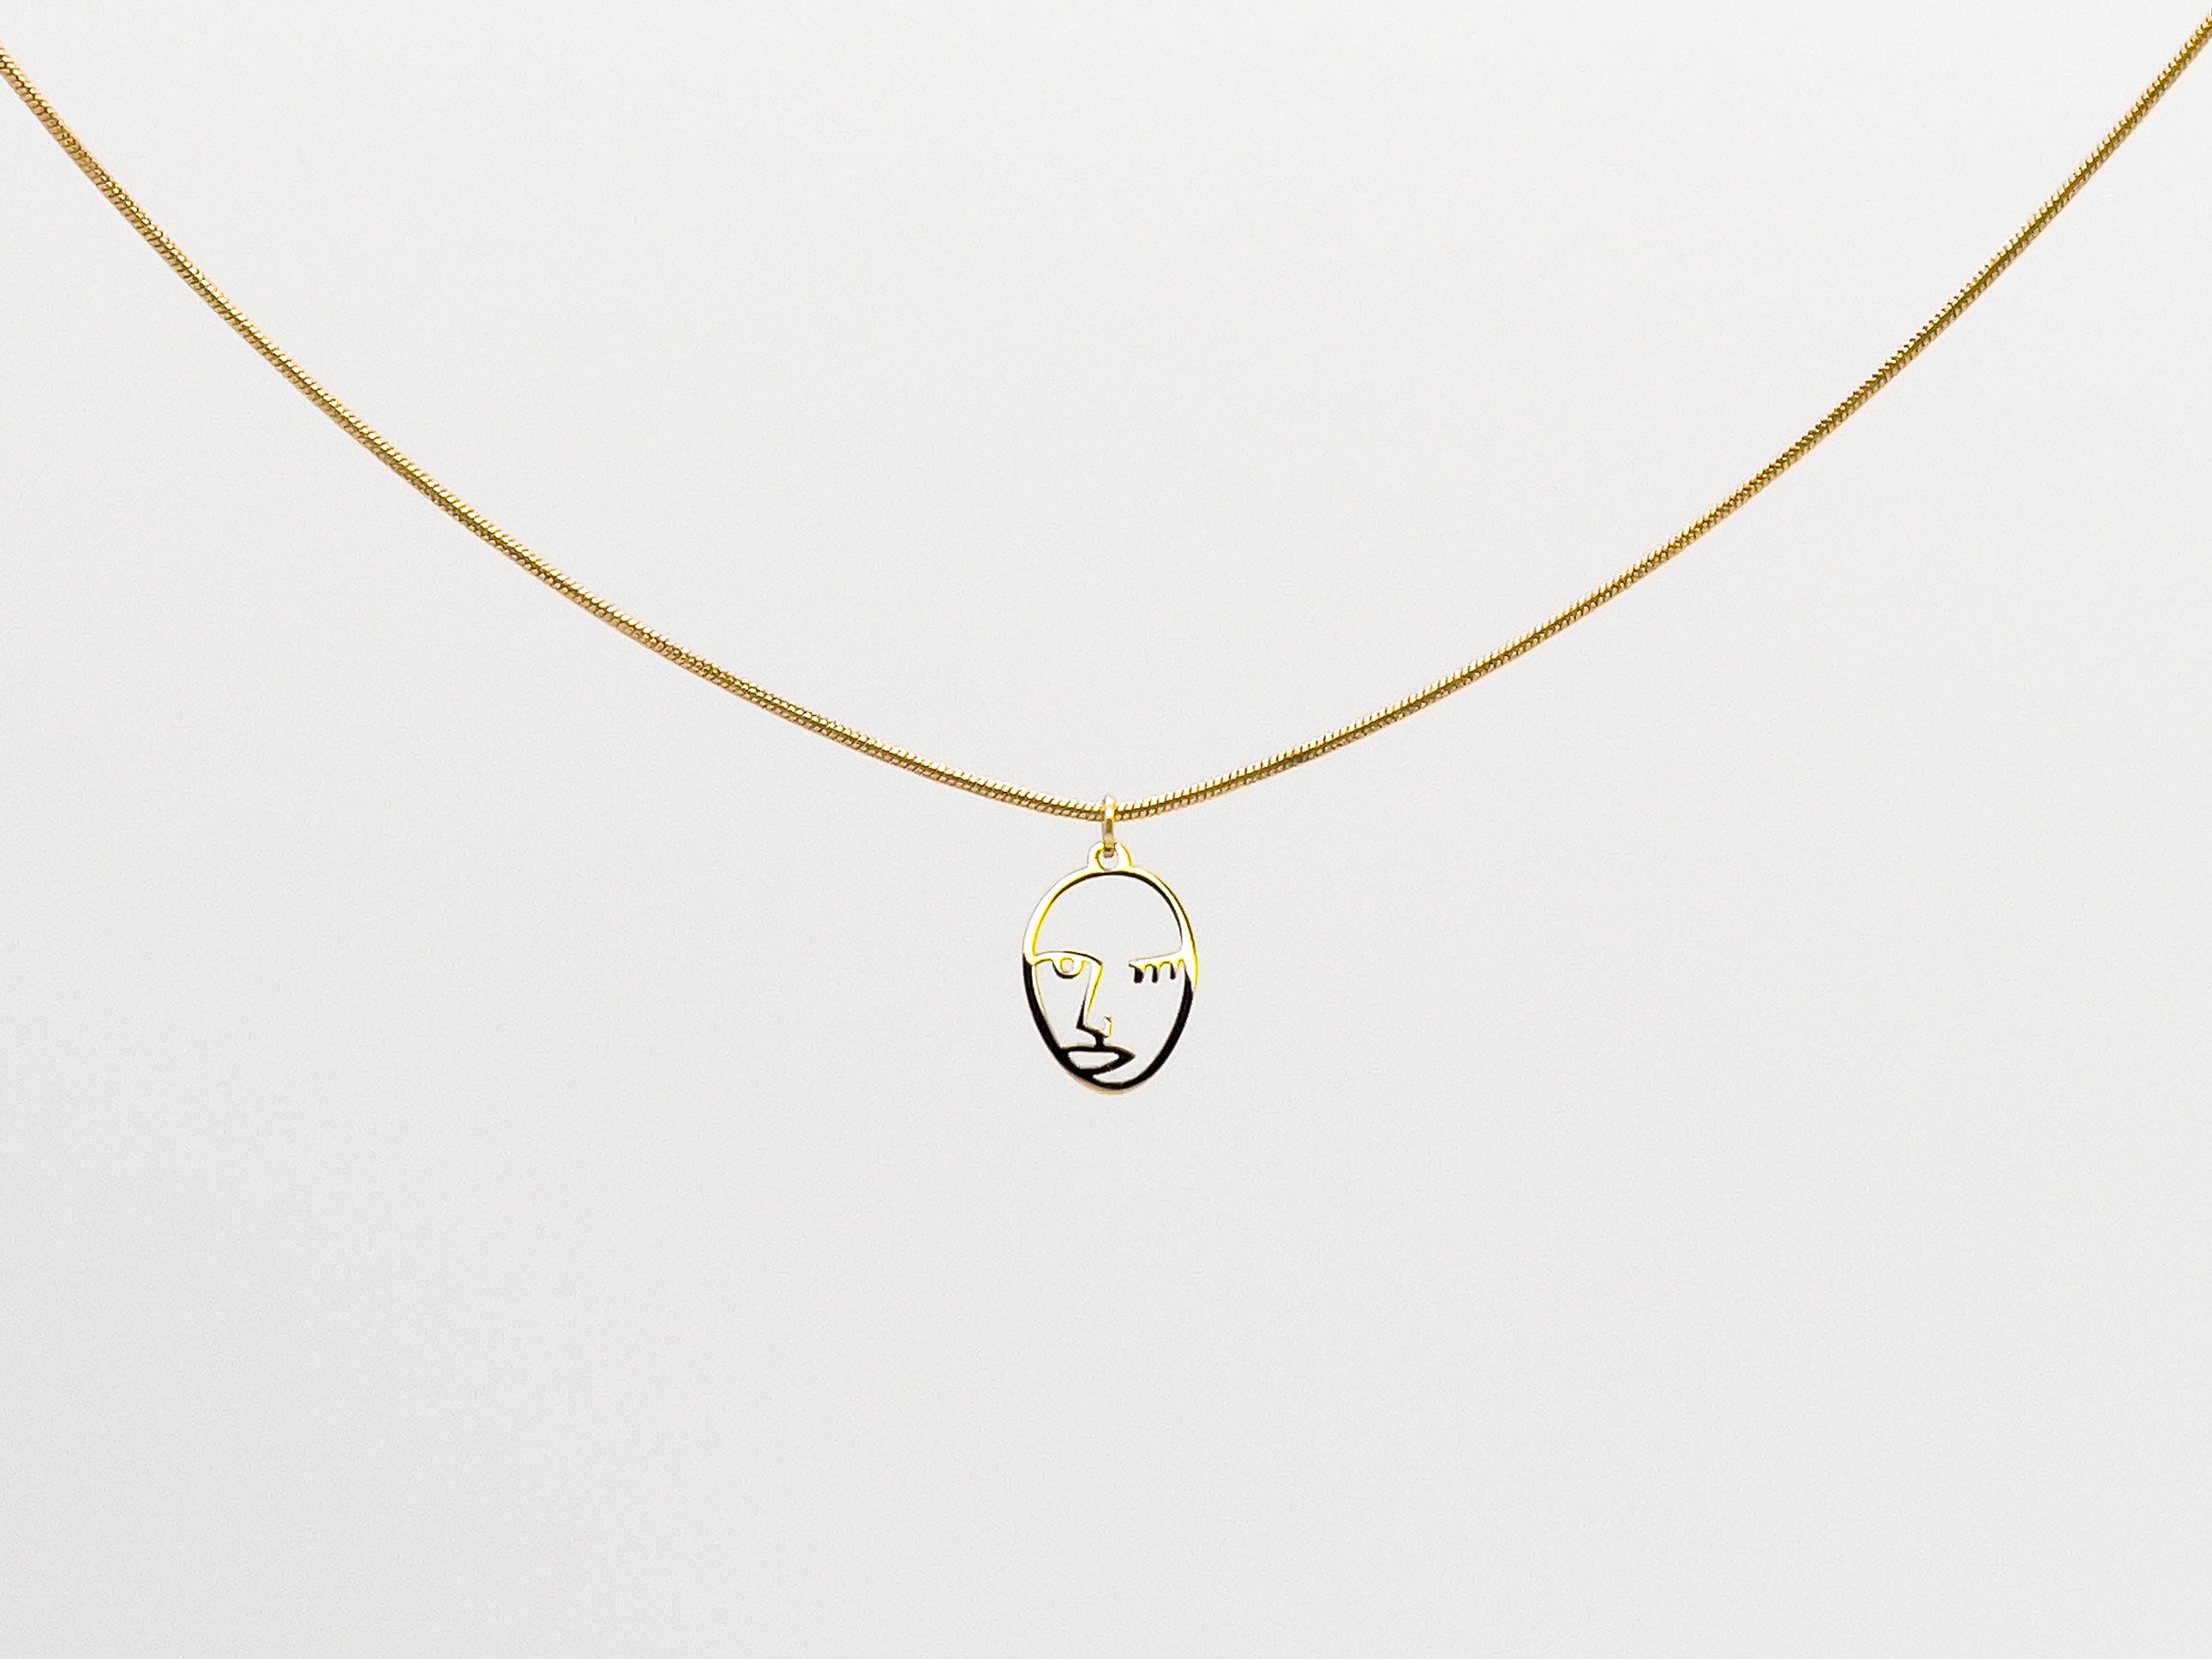 It's Me, Gold Face Pendant Necklace - Jewelry Shop | Chic Chic Bon